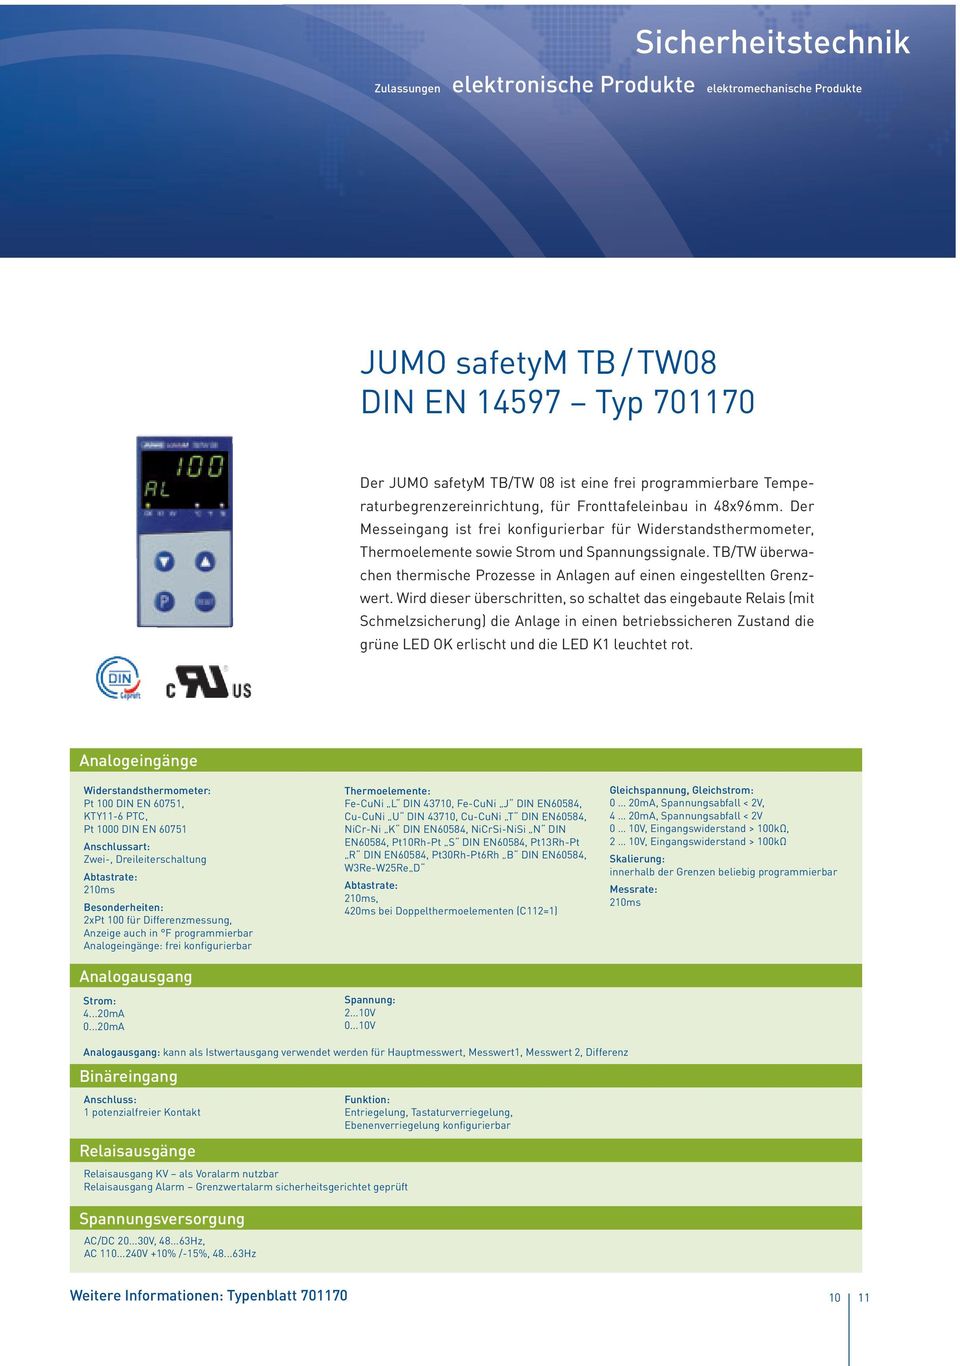 TB/TW überwachen thermische Prozesse in Anlagen auf einen eingestellten Grenzwert.